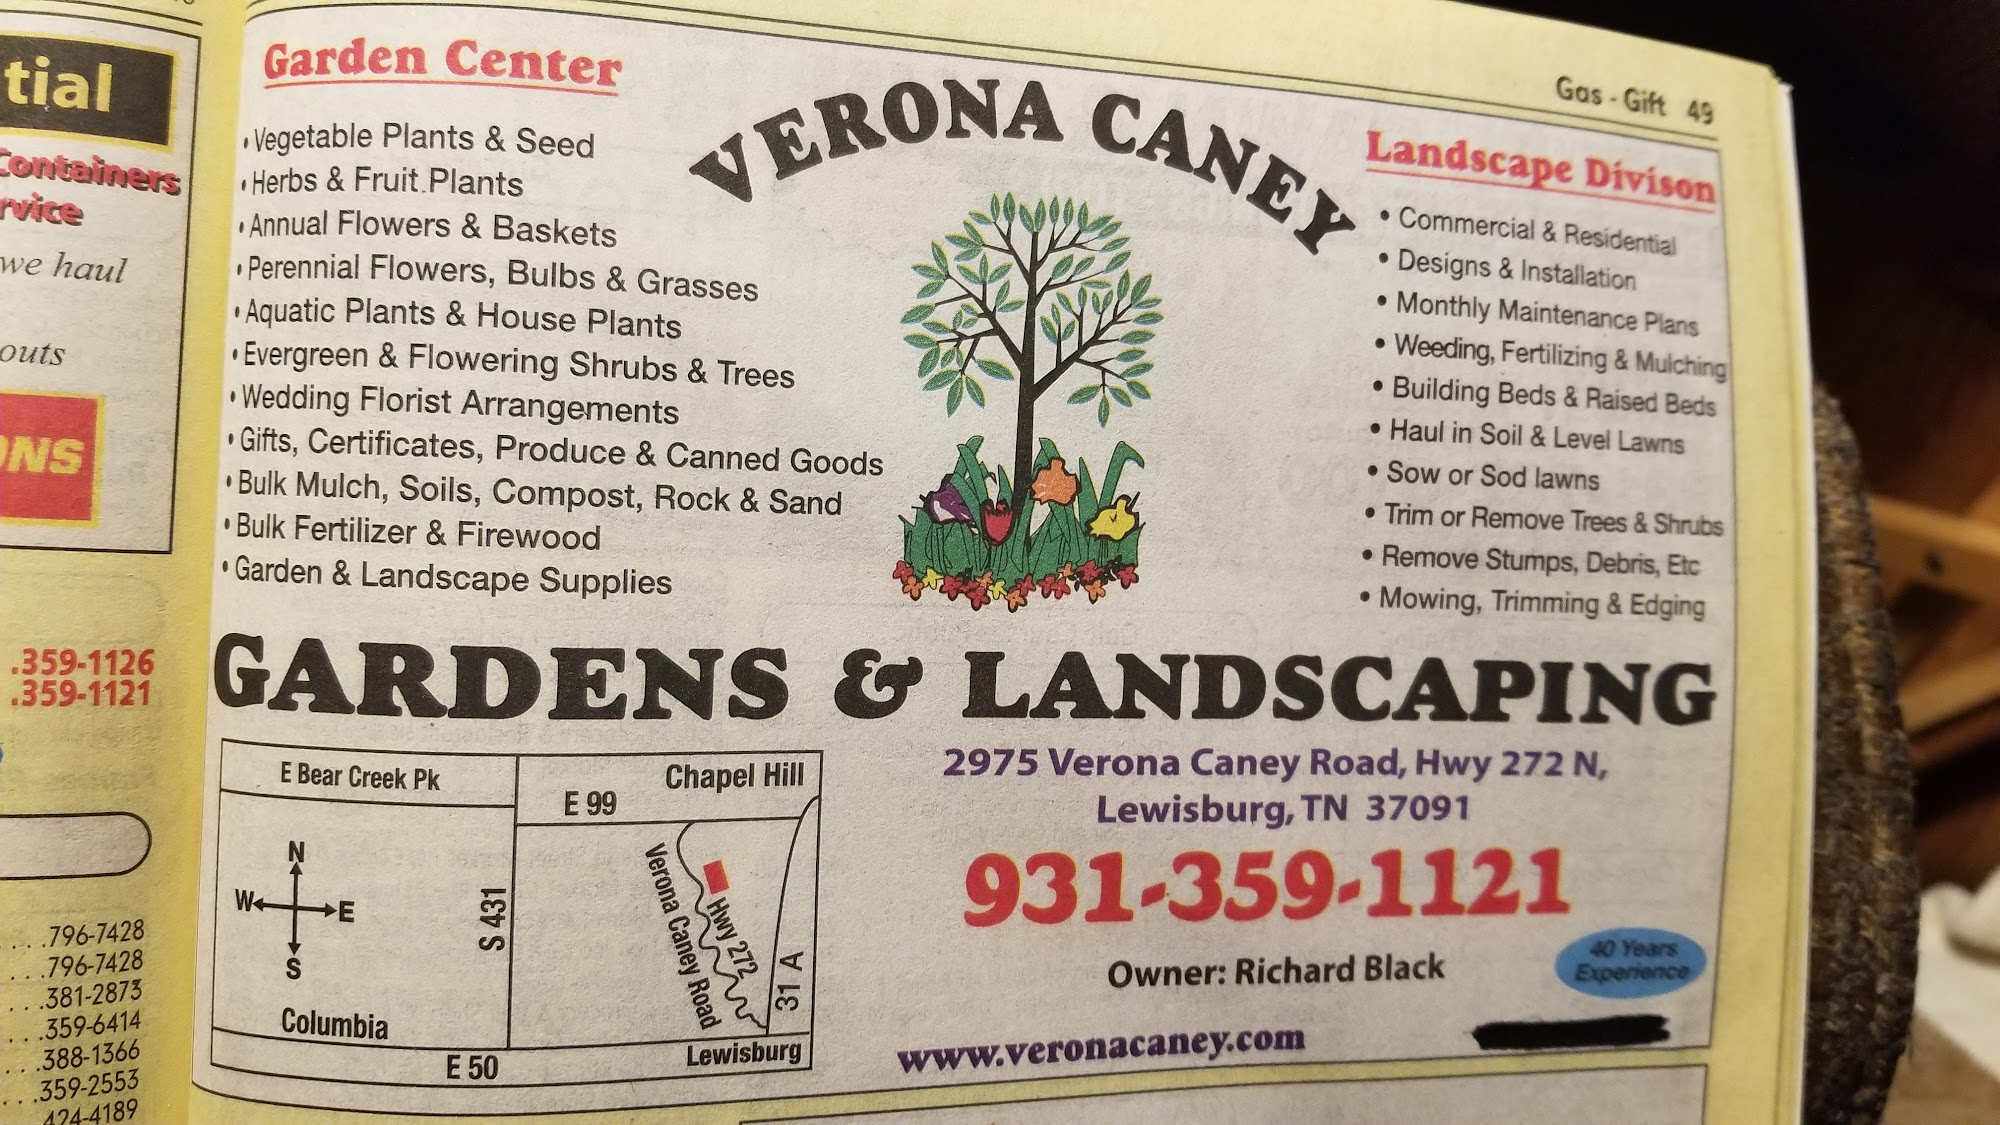 Verona Caney Garden & Landscaping